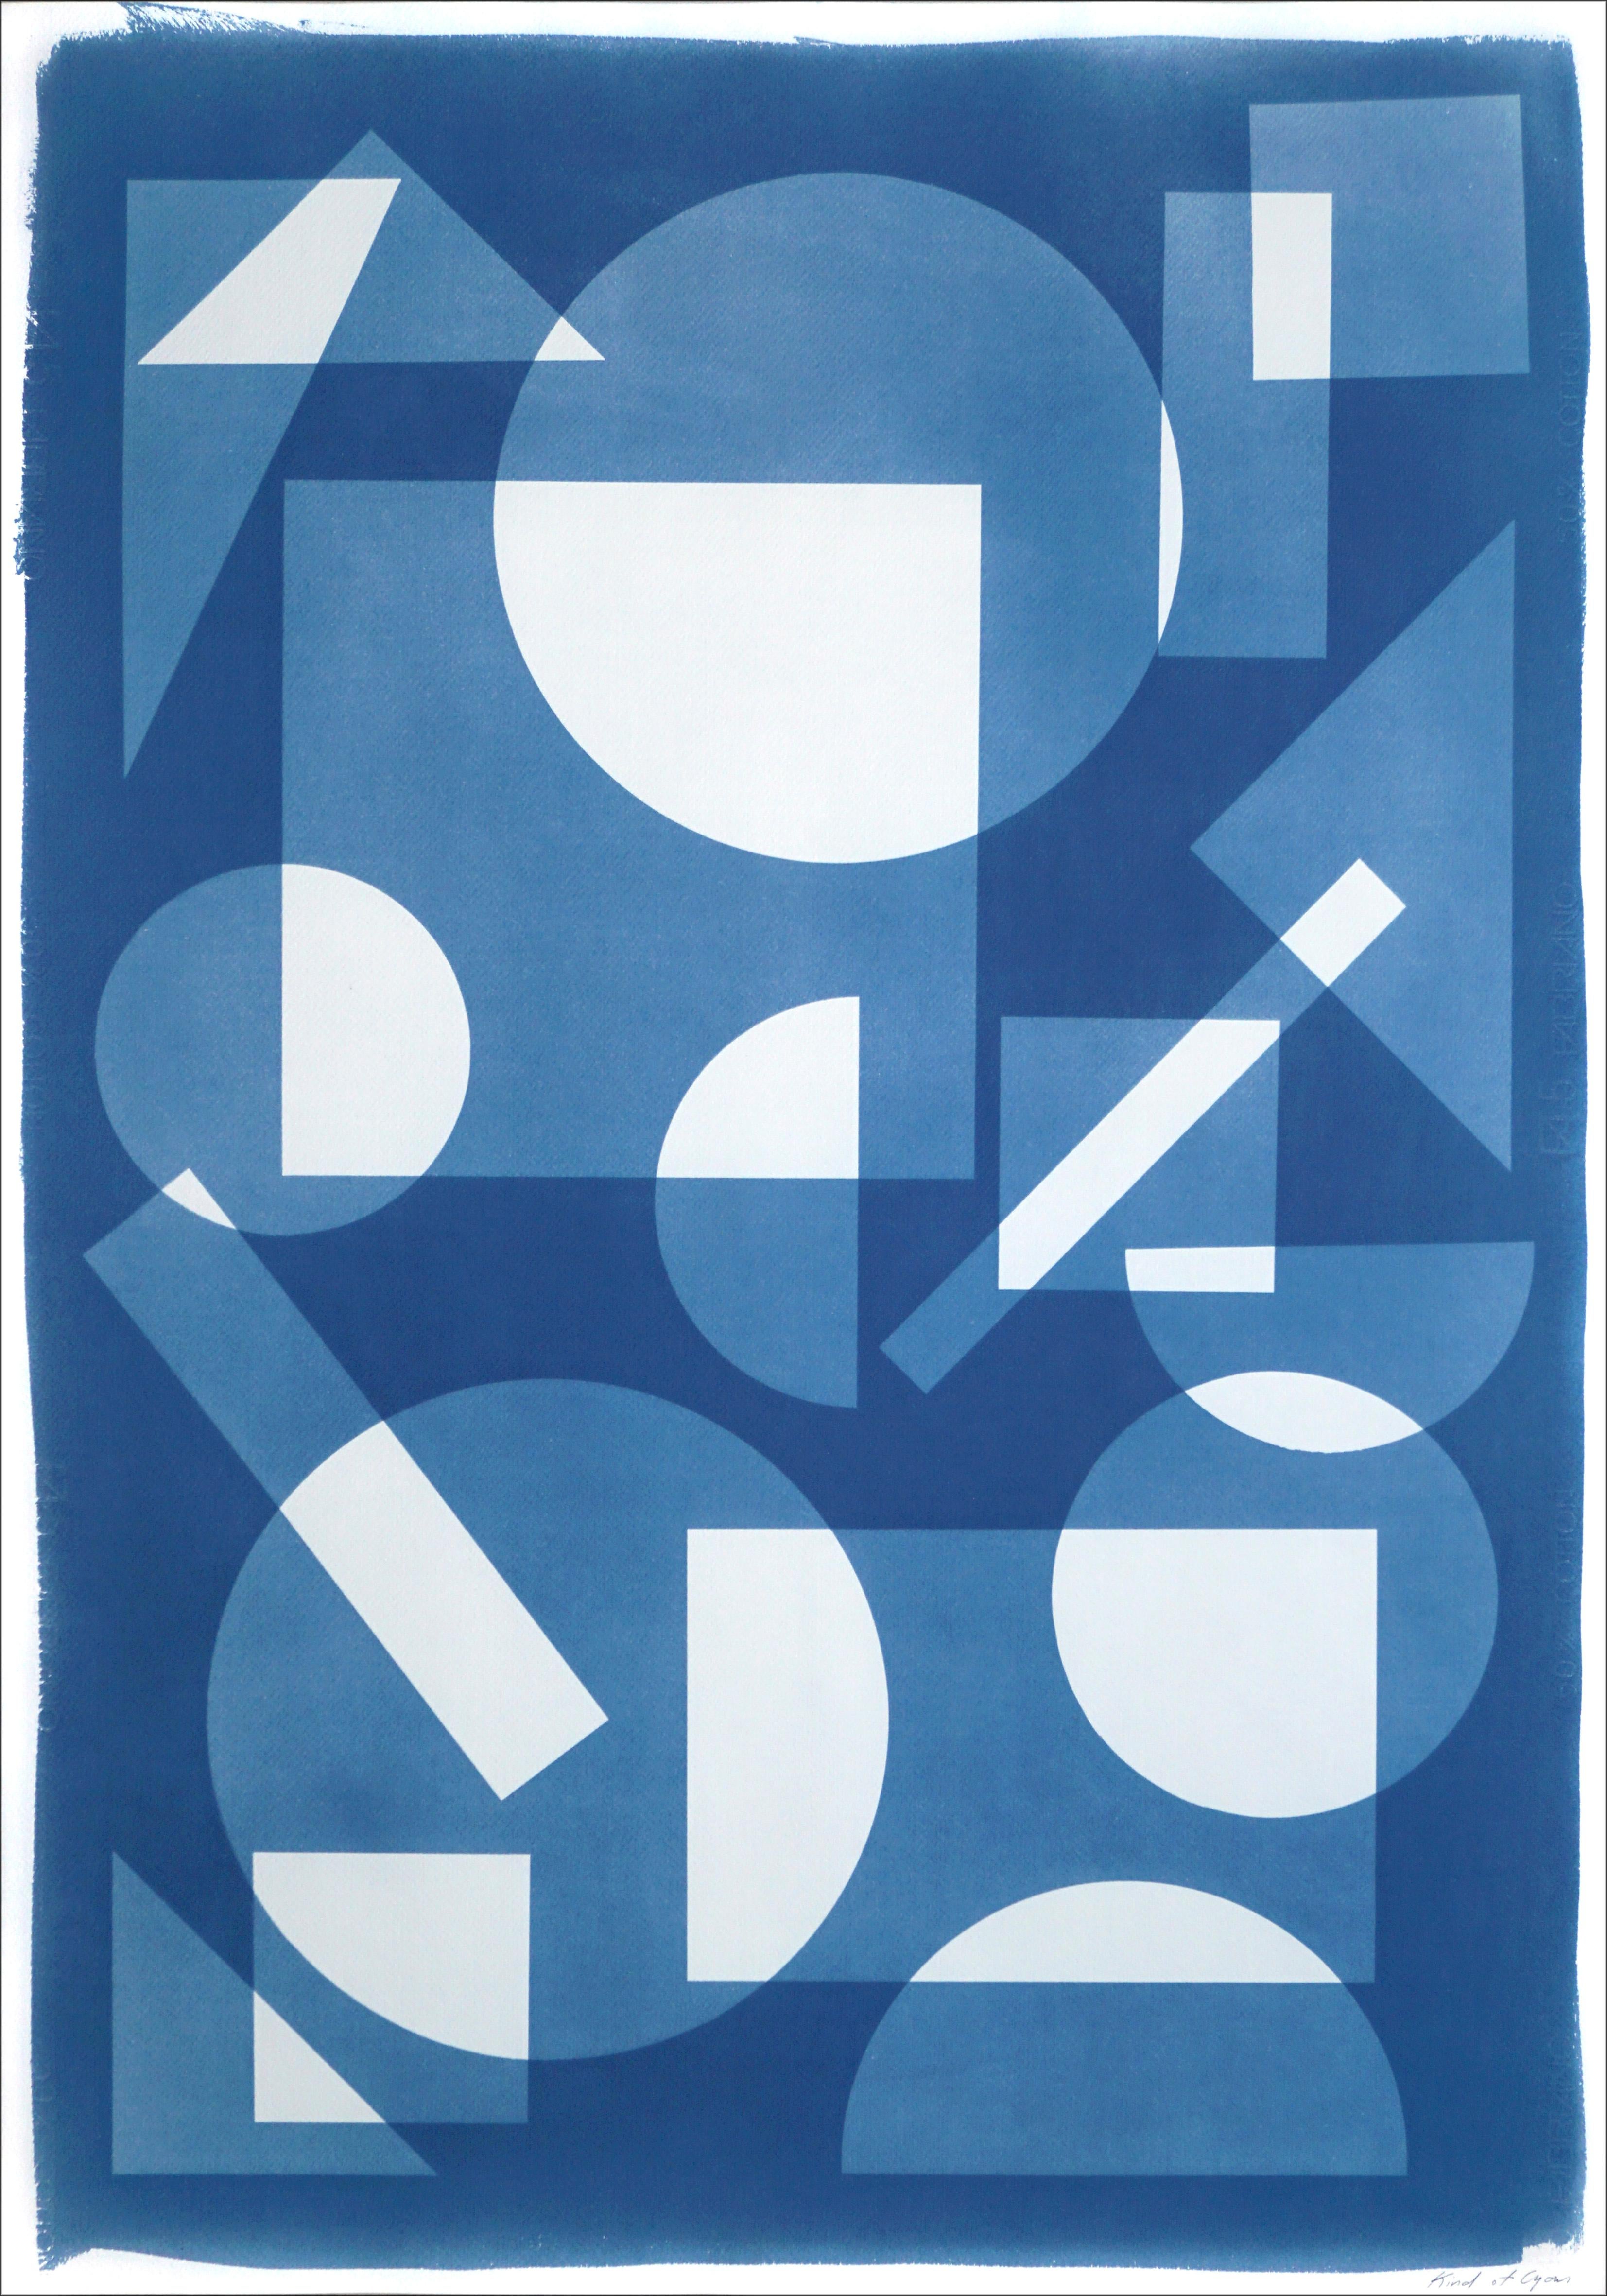 Konstruktivistische Monotypie in schwebenden Formen, weiße und blaue Geometrie